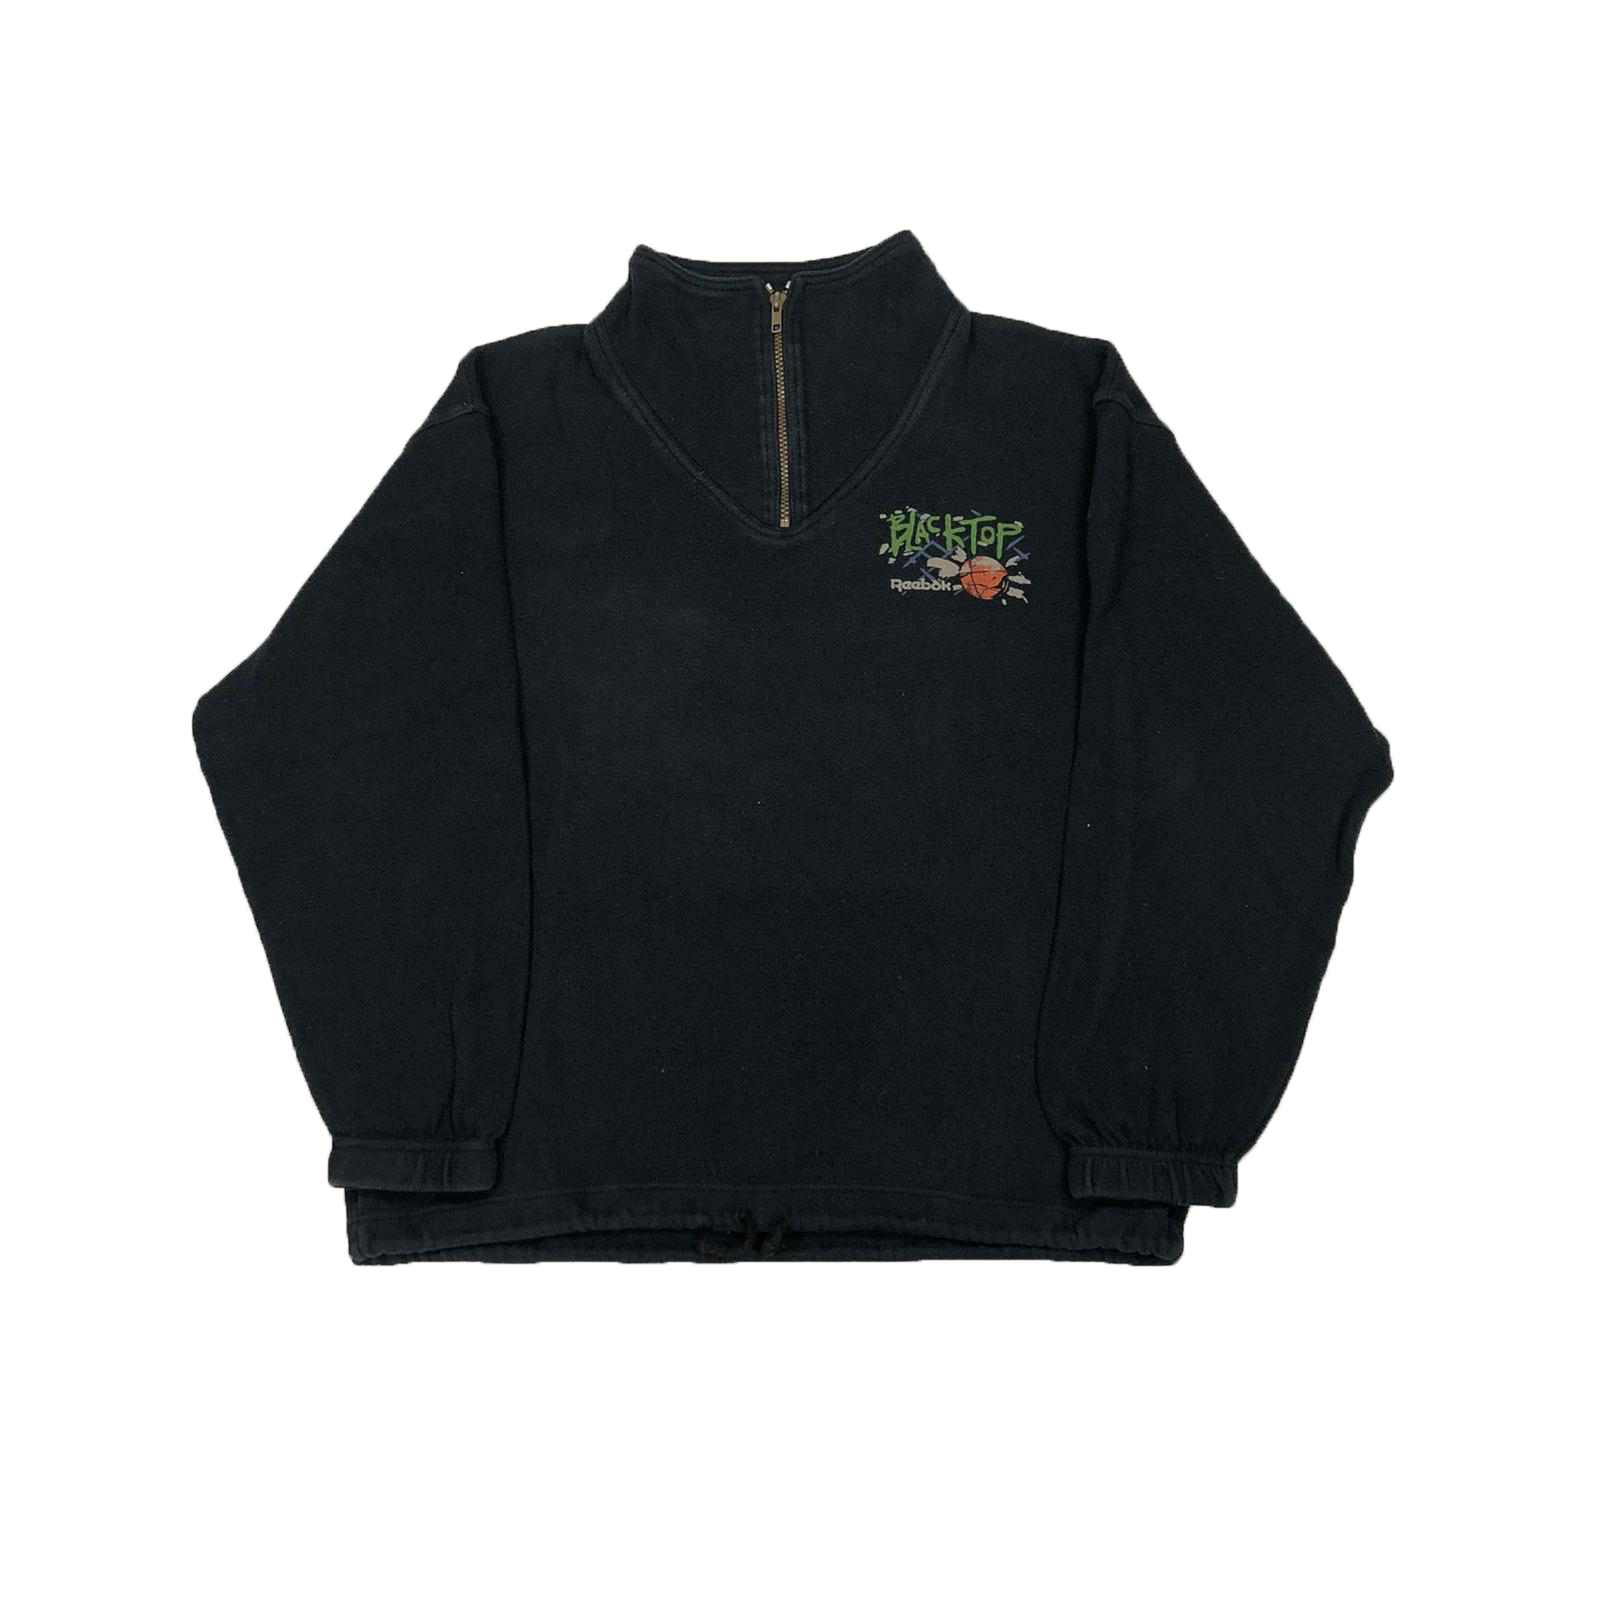 90's Reebok 1/4 zip sweatshirt